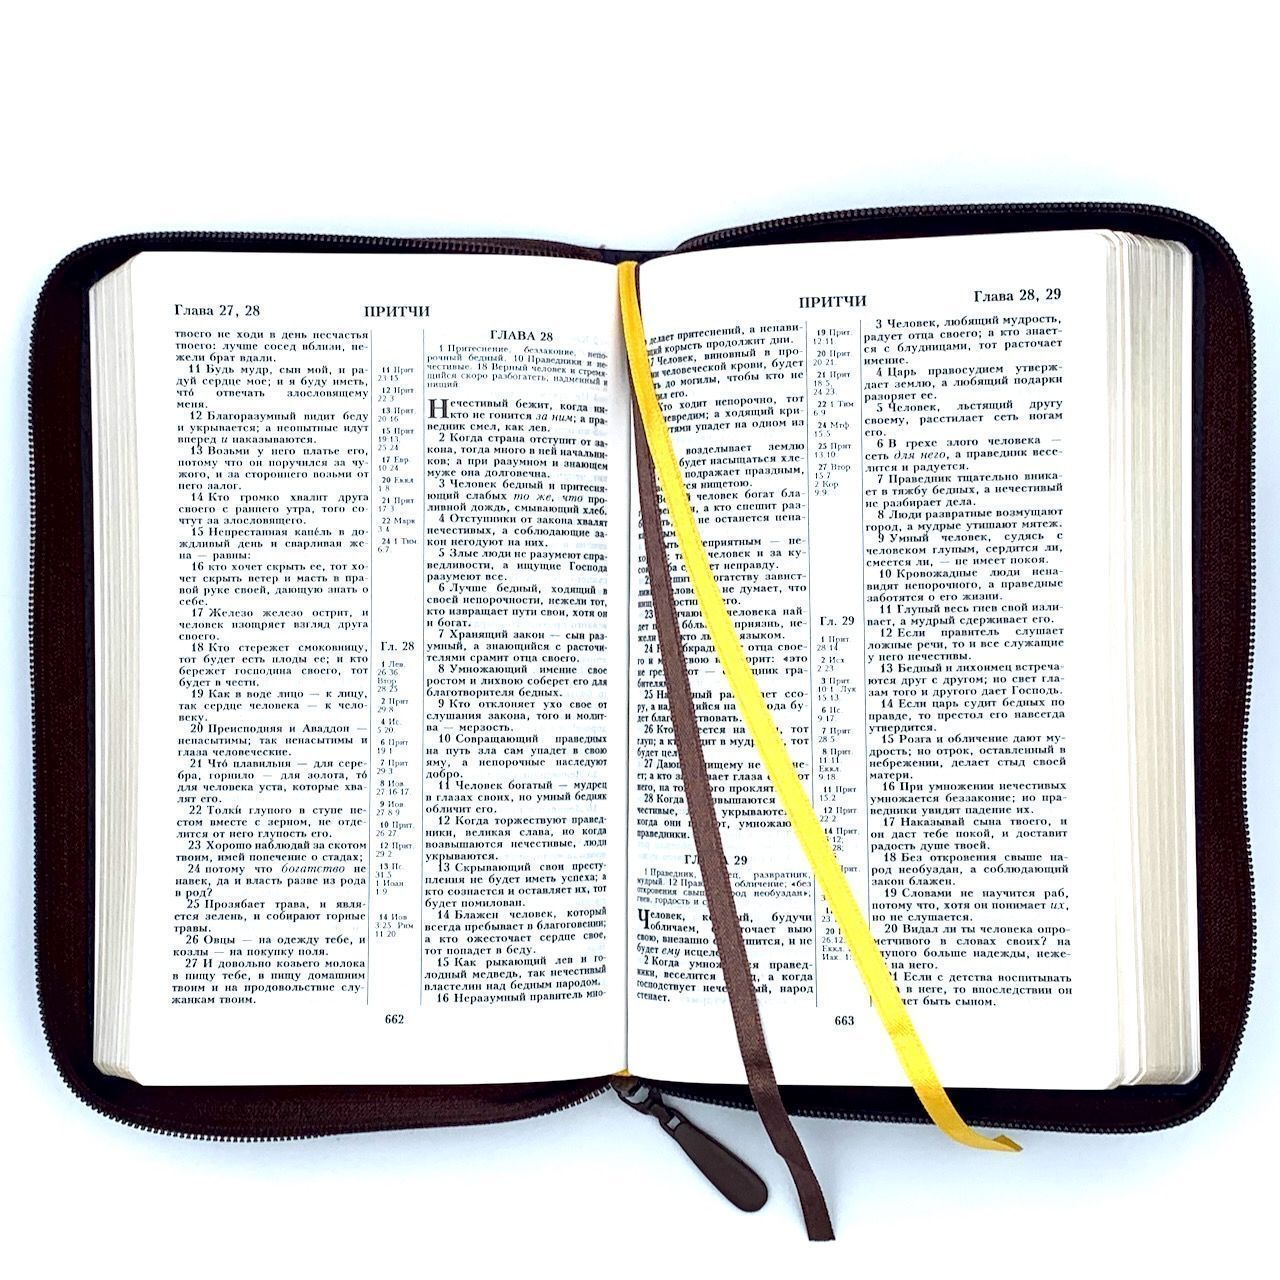 Библия 055z код 23055-25 надпись "Библия с венземлем", кожаный переплет на молнии, цвет коричневый пятнистый, средний формат, 143*220 м